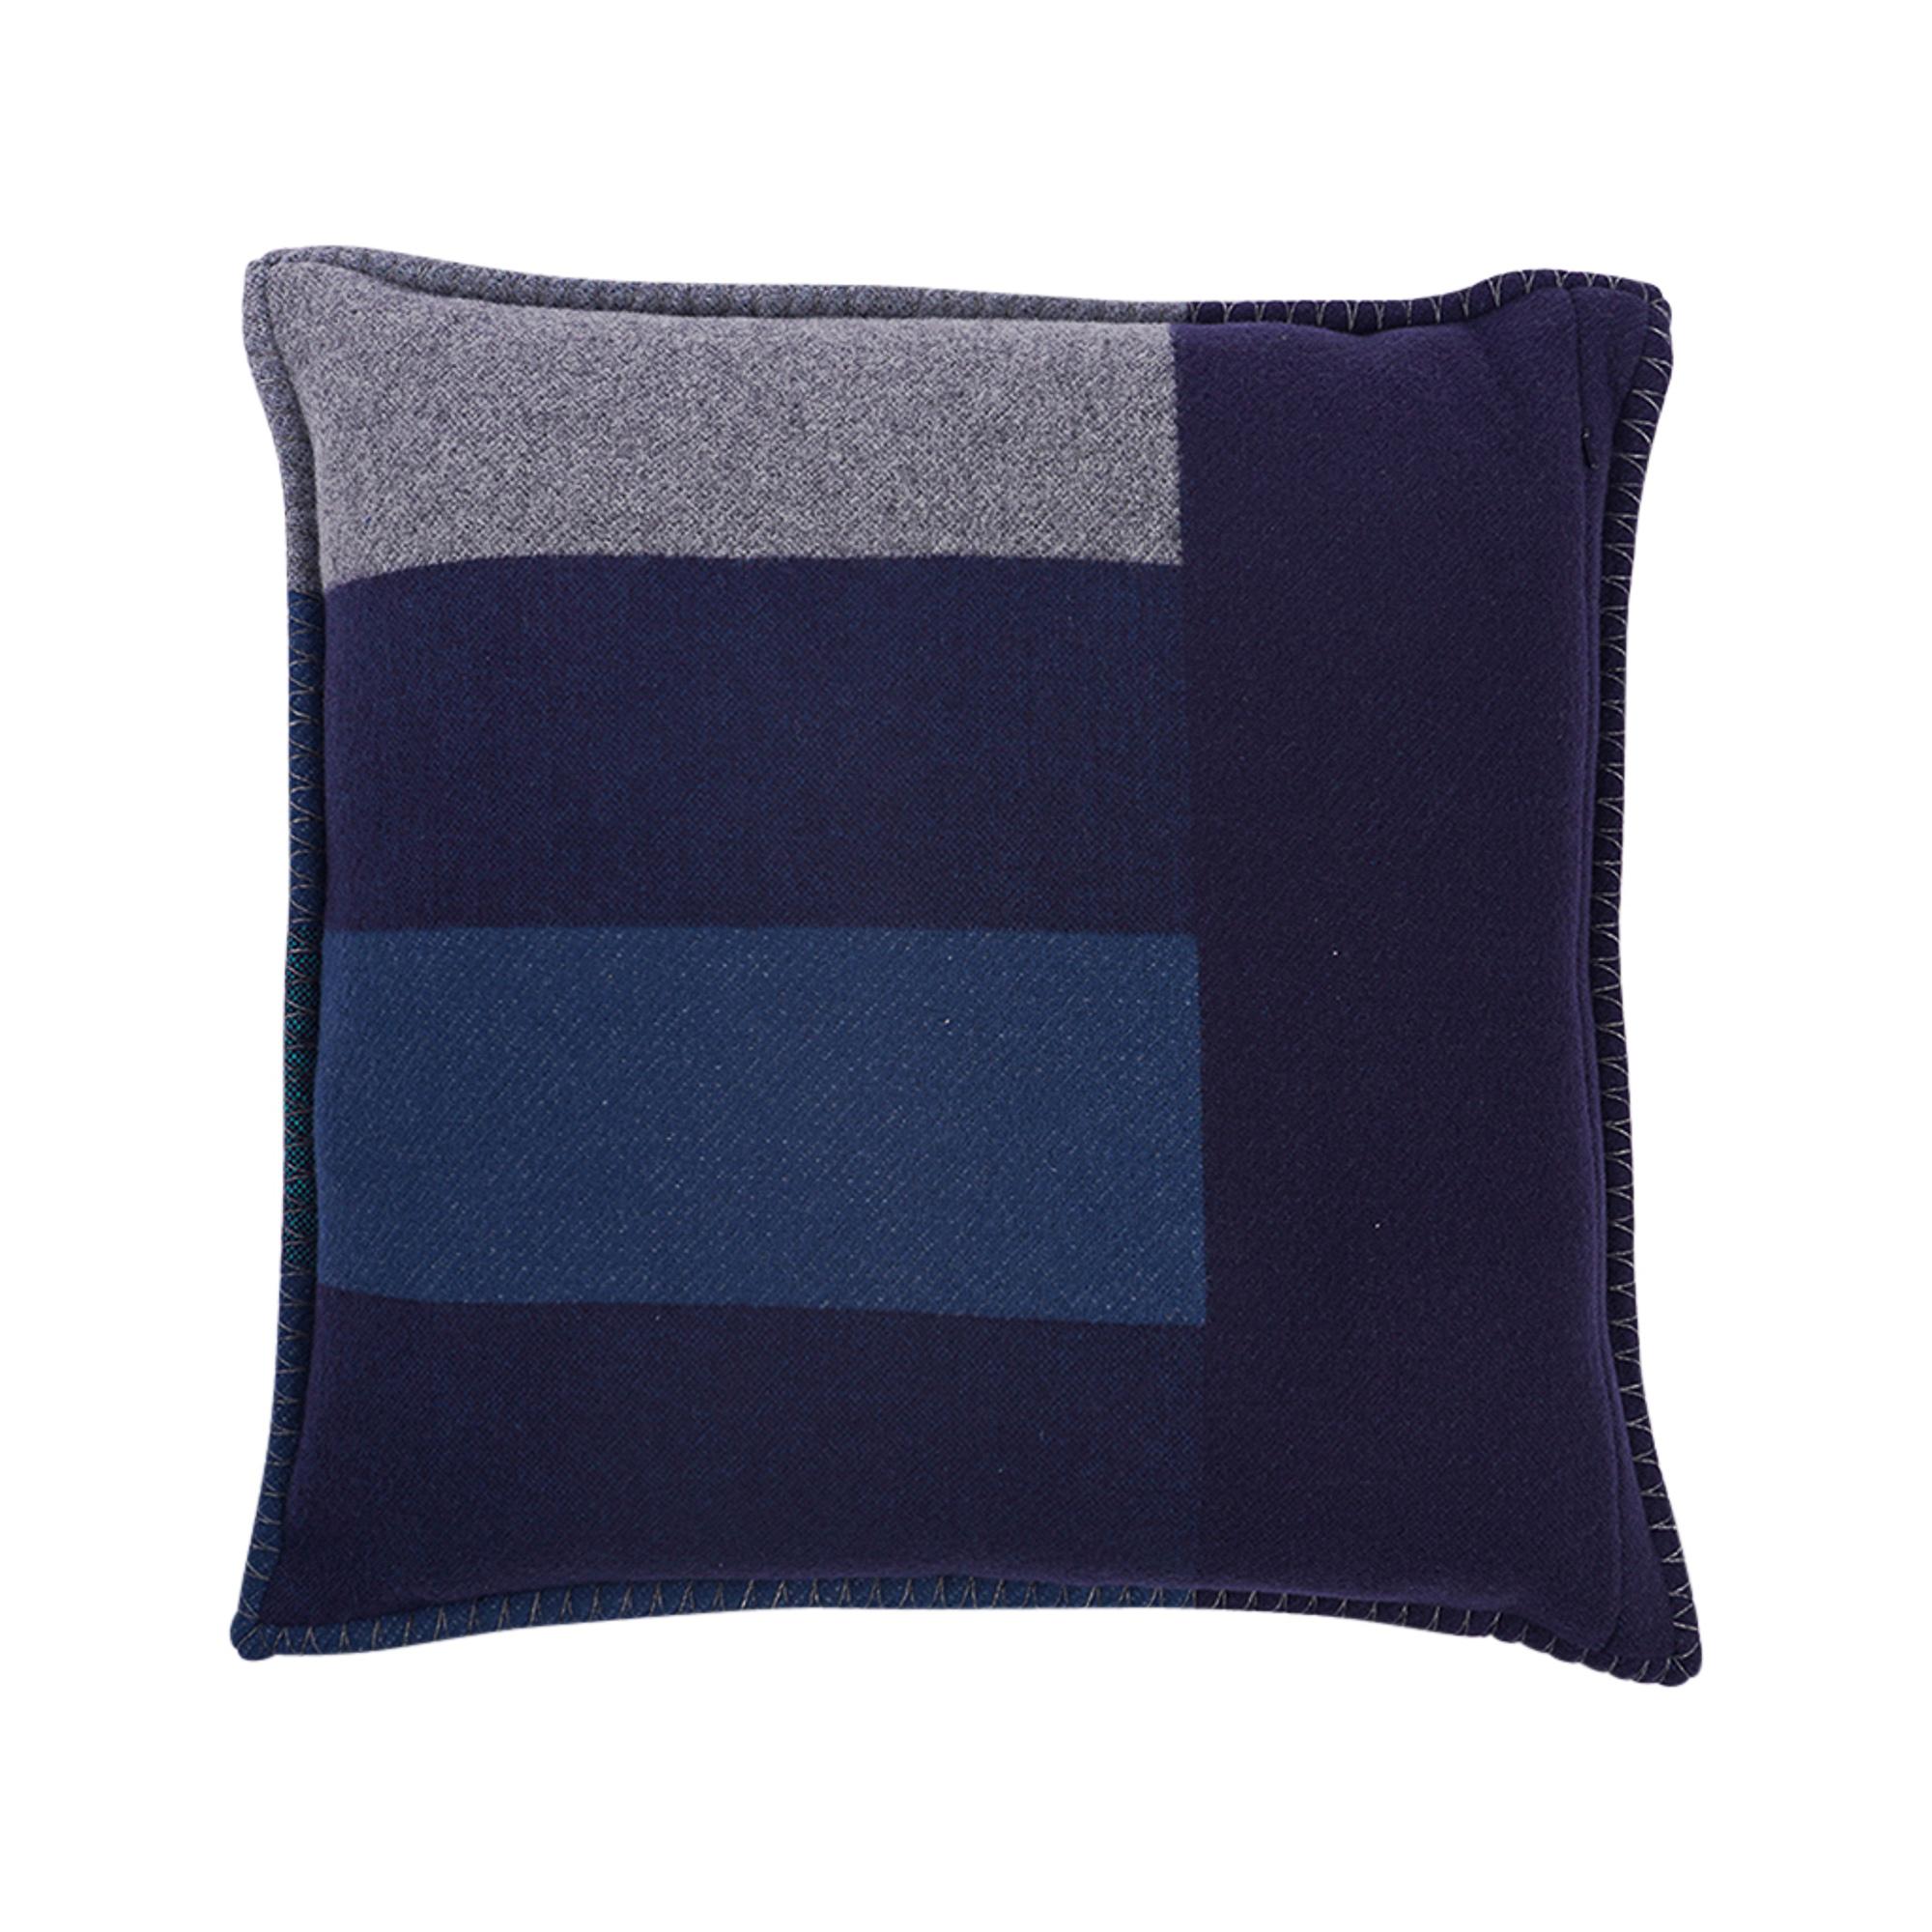 Women's or Men's Hermes H Casaque Pillow Marine / Acier New w/ Sleeper For Sale